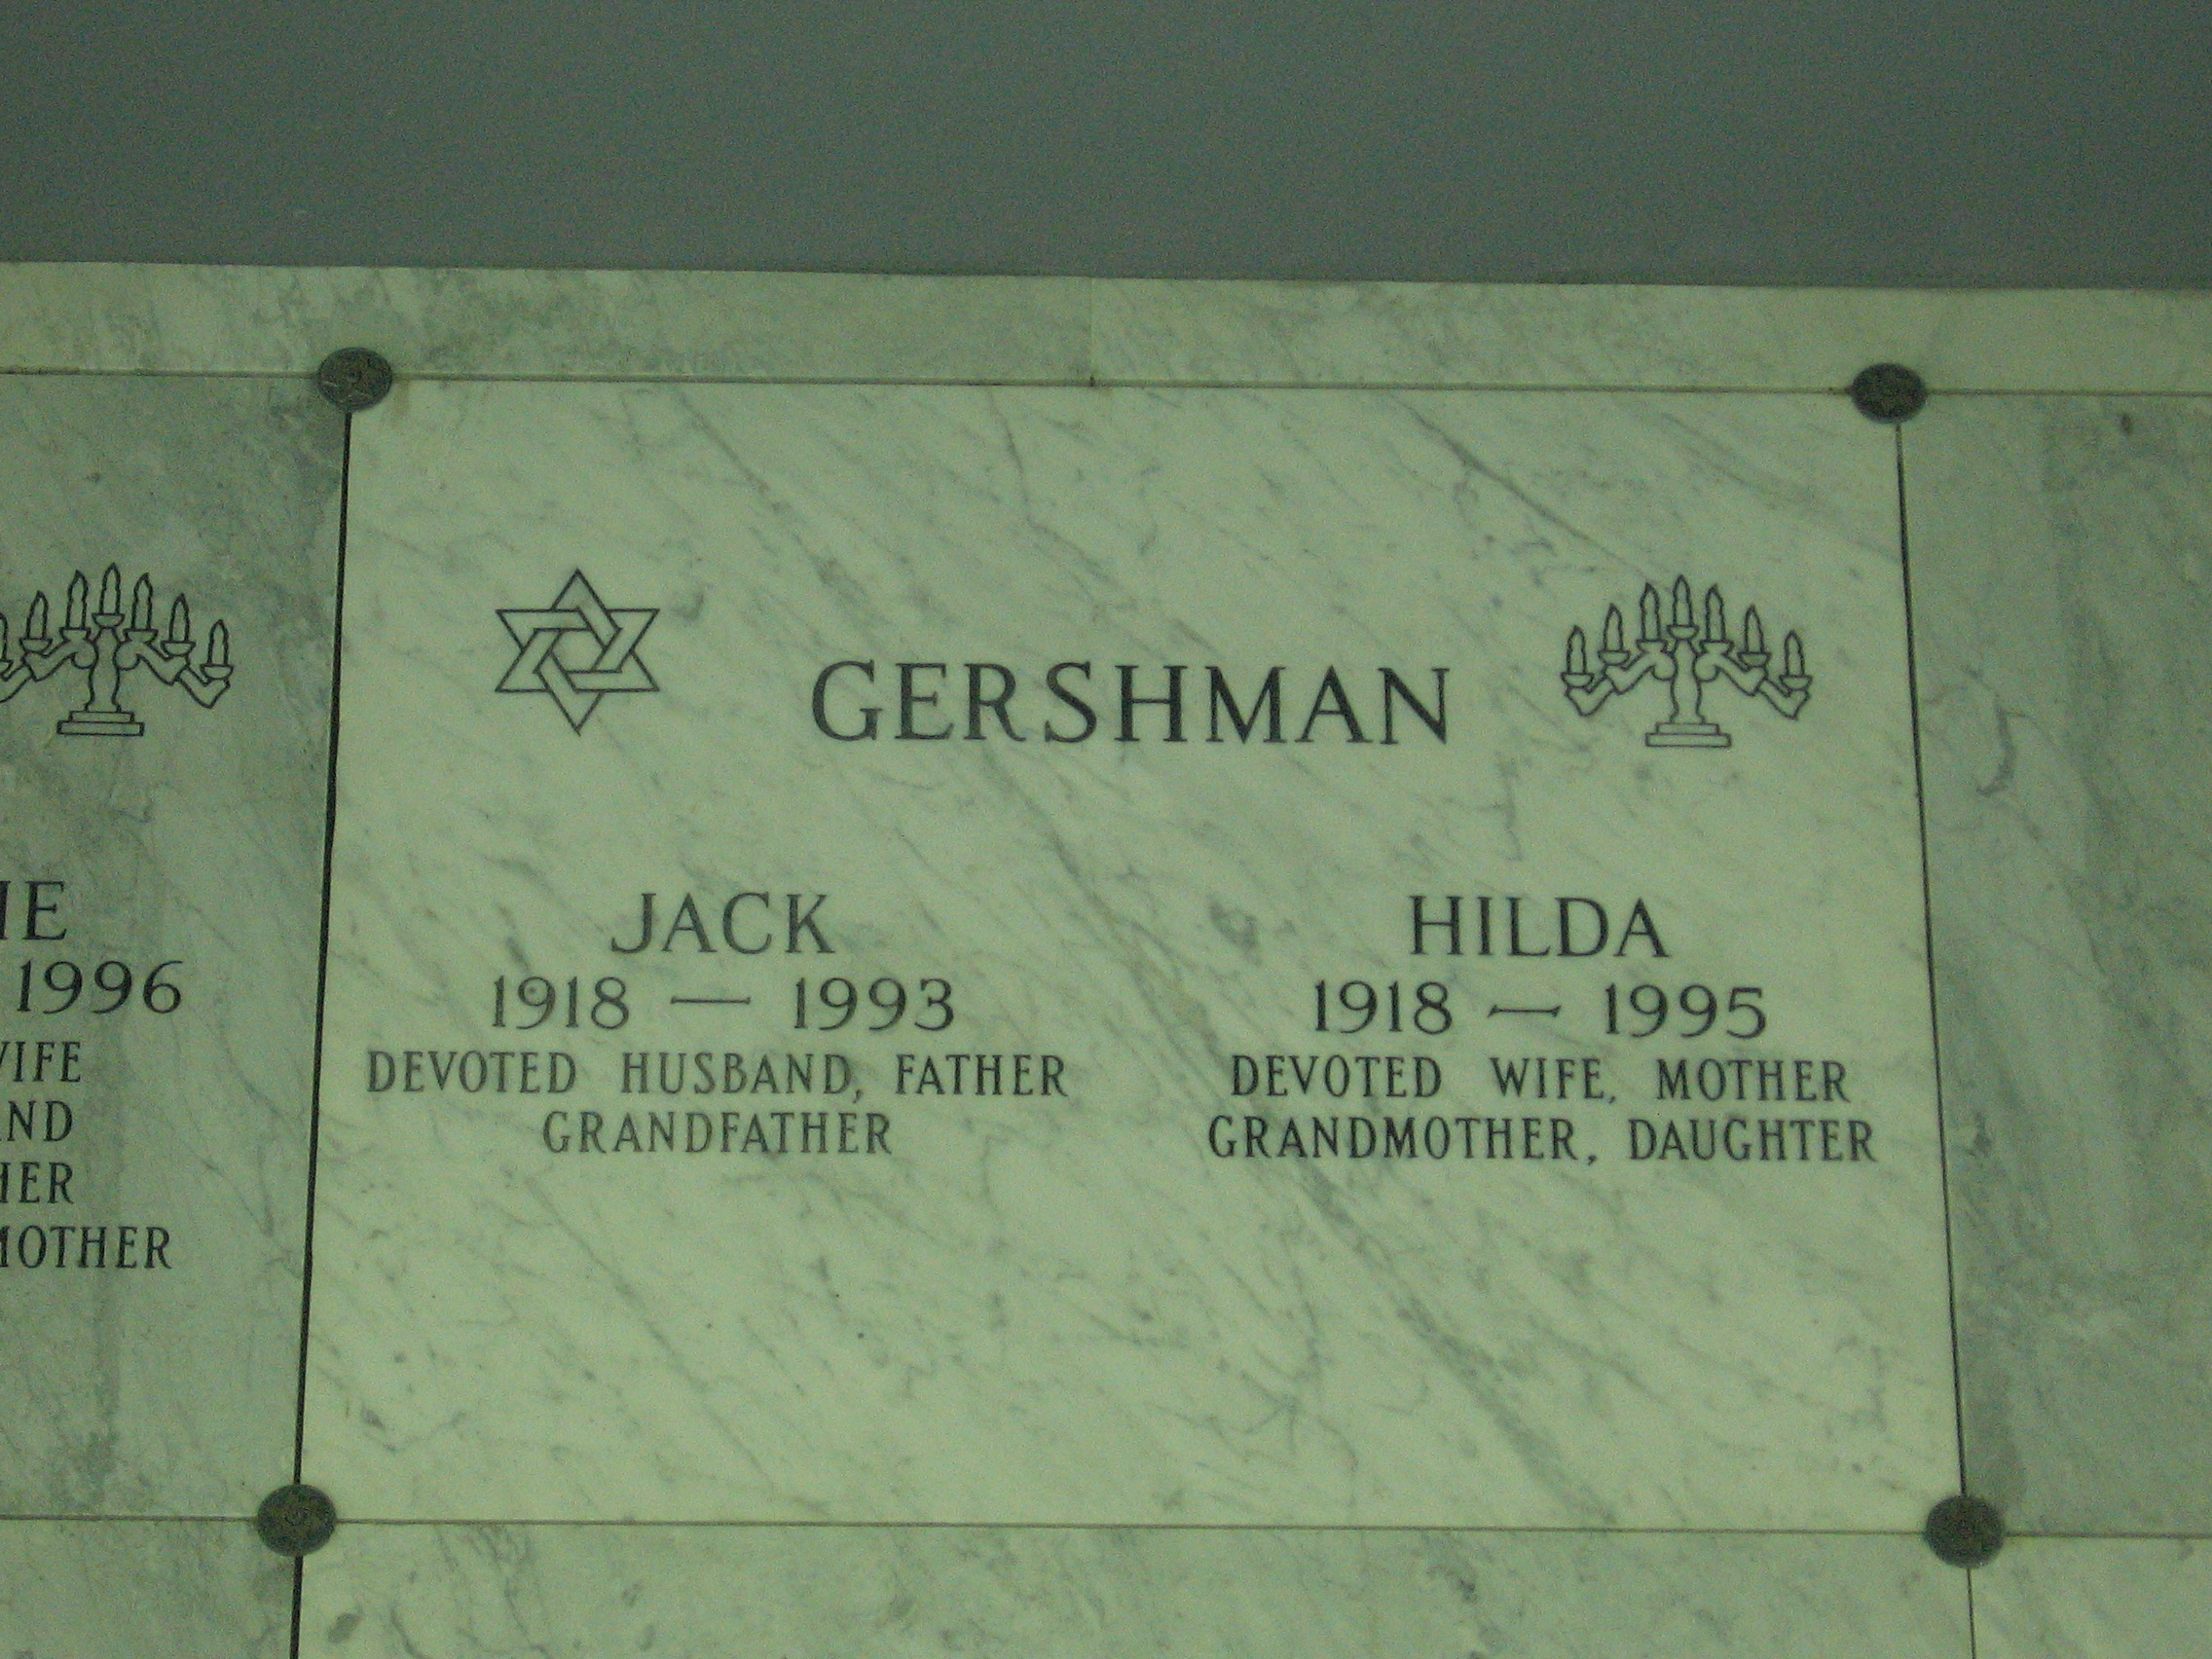 Jack Gershman